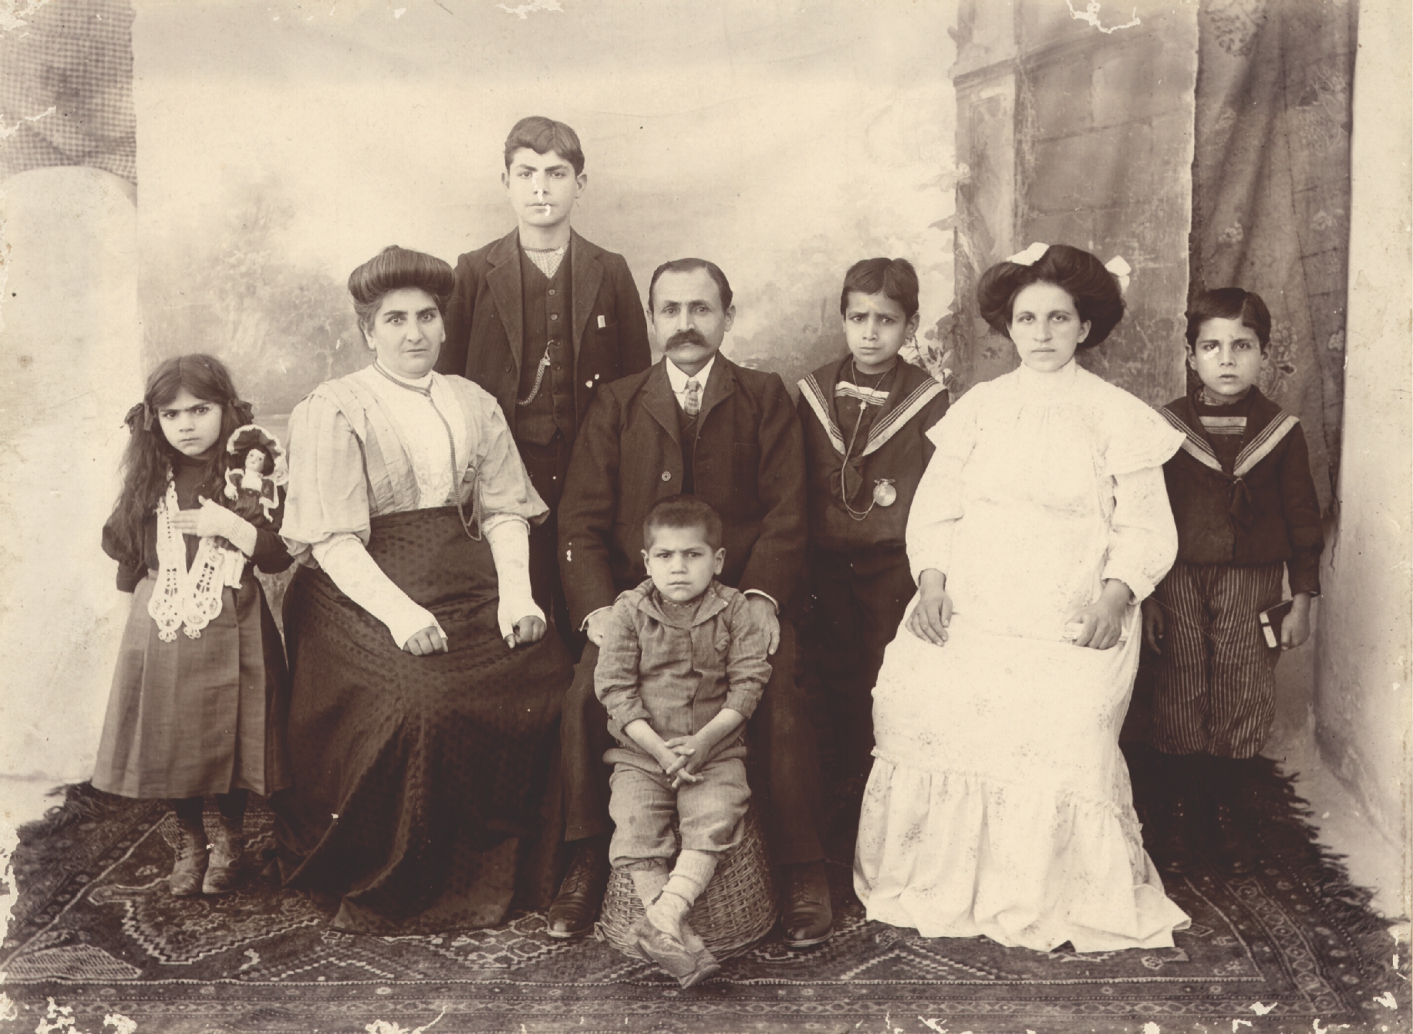 Ձախից աջ՝ ՏԷր եւ Տիկին Այգիւլ եւ Պօղոս Փիտէճեան եւ զաւակներ՝ Կատարինէ, Աւետիս, Կարապետ, Պետրոս, Բիւզանդ: Կեսարիա, 1910 թ.: